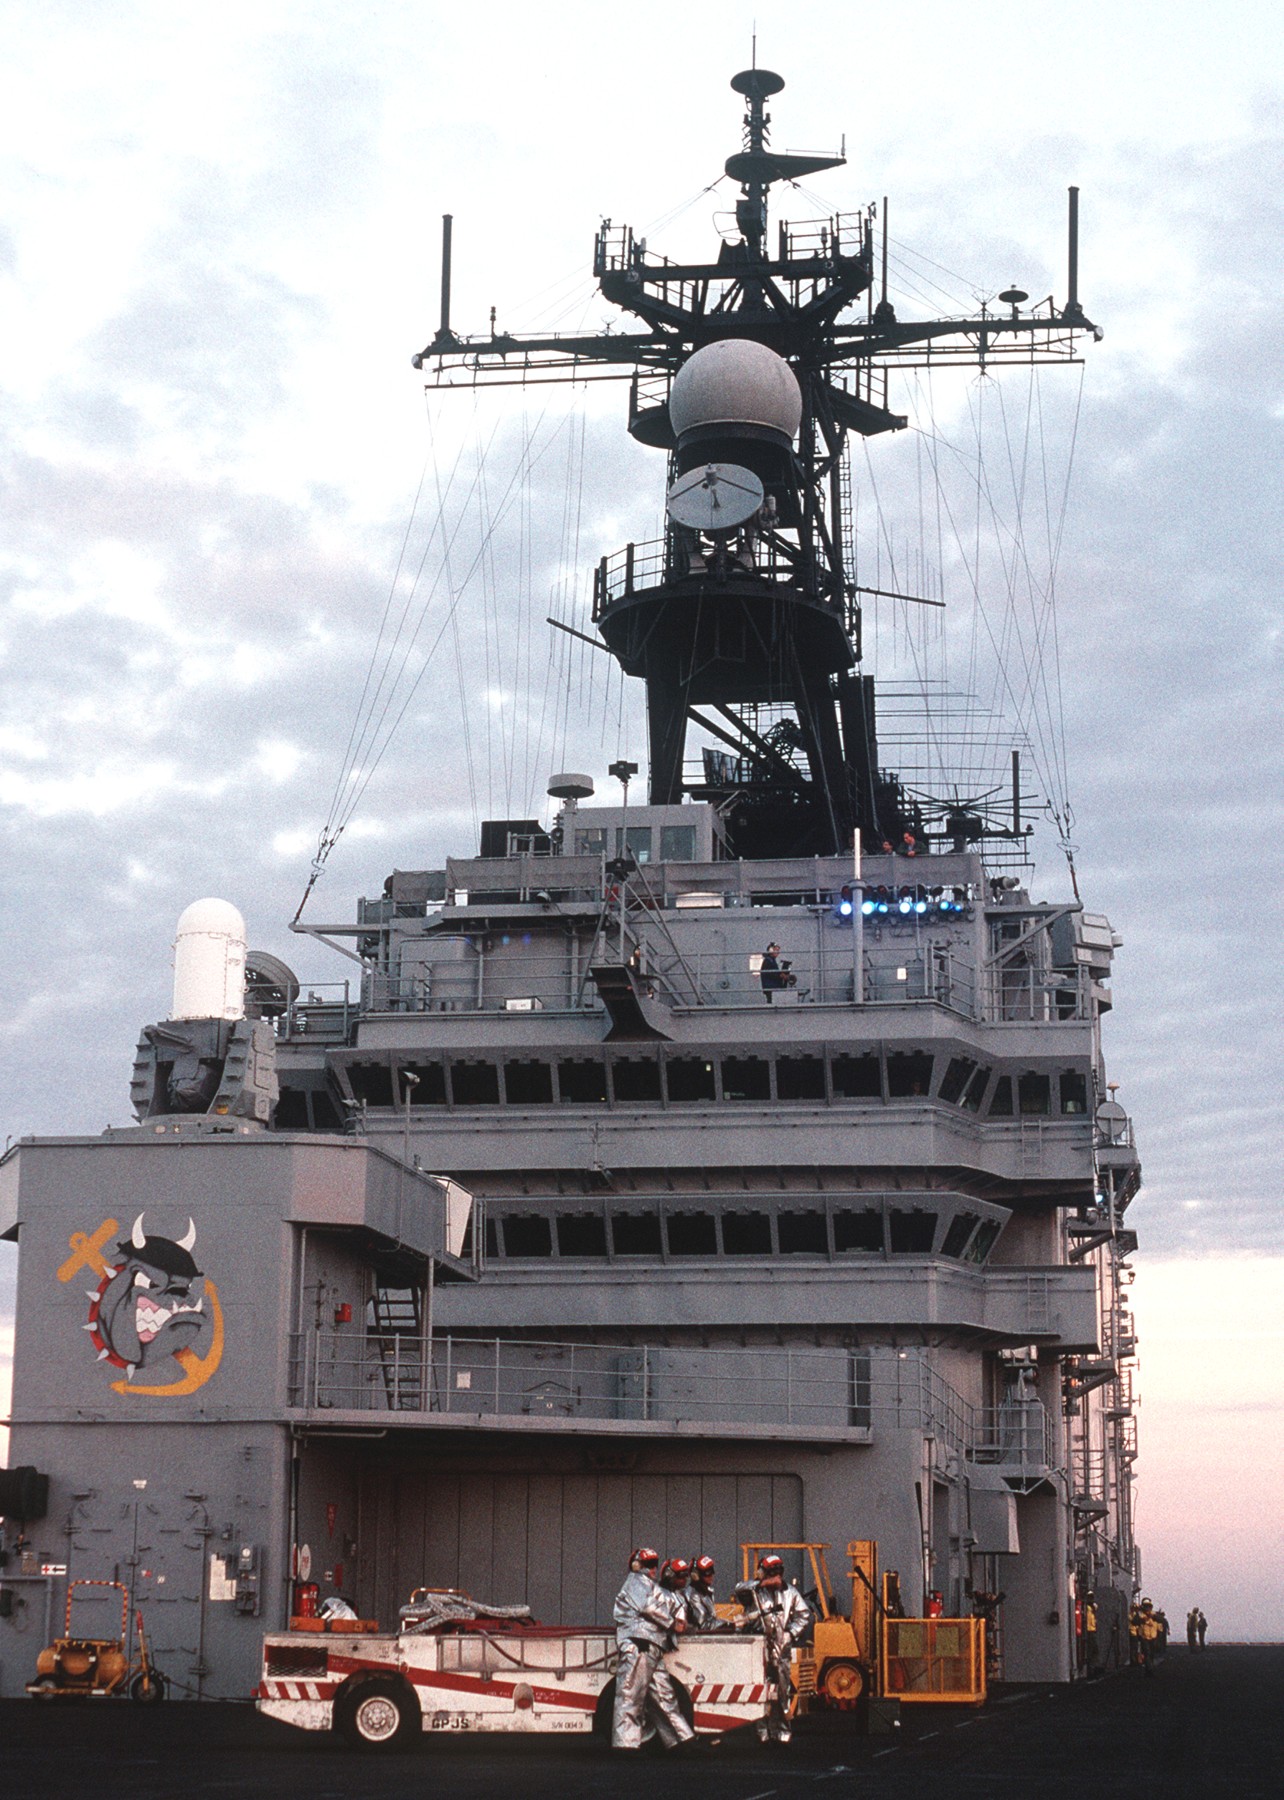 lha-3 uss belleau wood tarawa class amphibious assault ship us navy 31